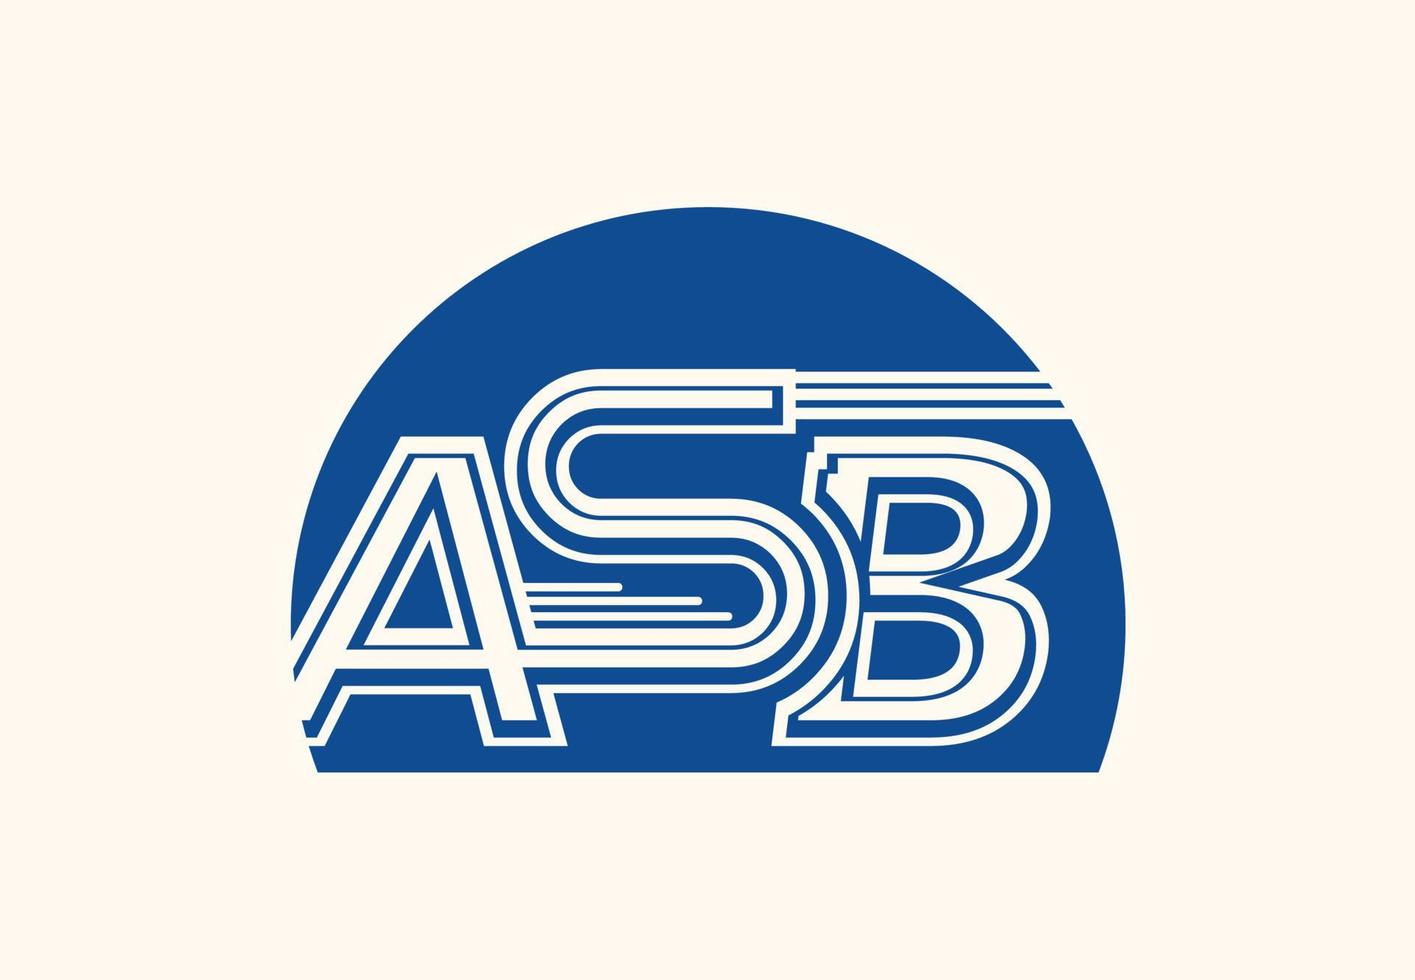 plantilla de diseño de icono y logotipo de letra asb vector